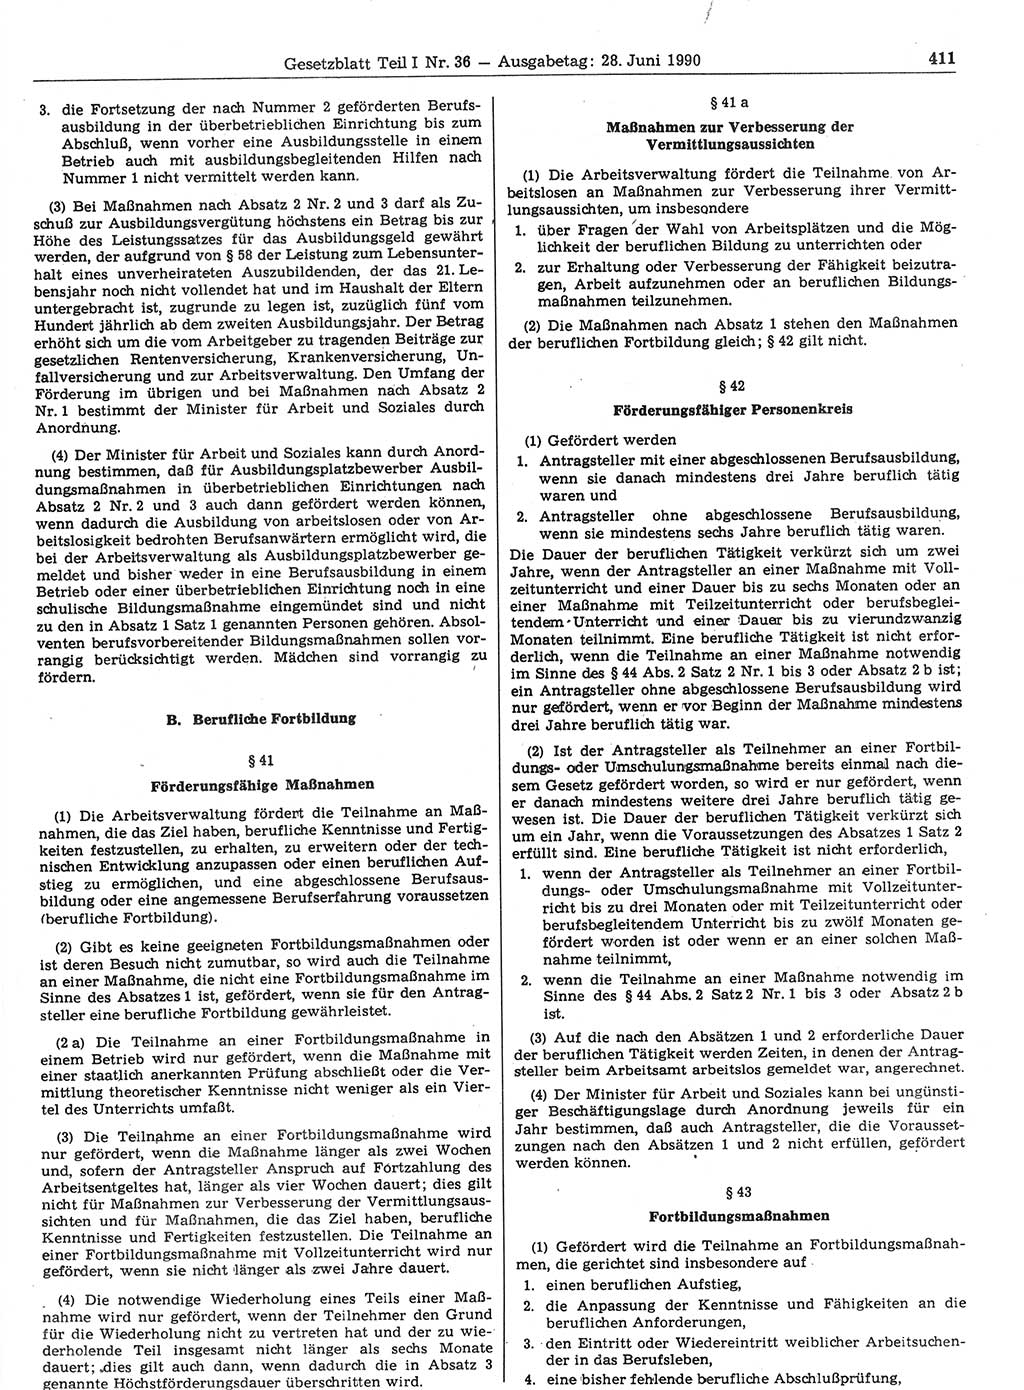 Gesetzblatt (GBl.) der Deutschen Demokratischen Republik (DDR) Teil Ⅰ 1990, Seite 411 (GBl. DDR Ⅰ 1990, S. 411)